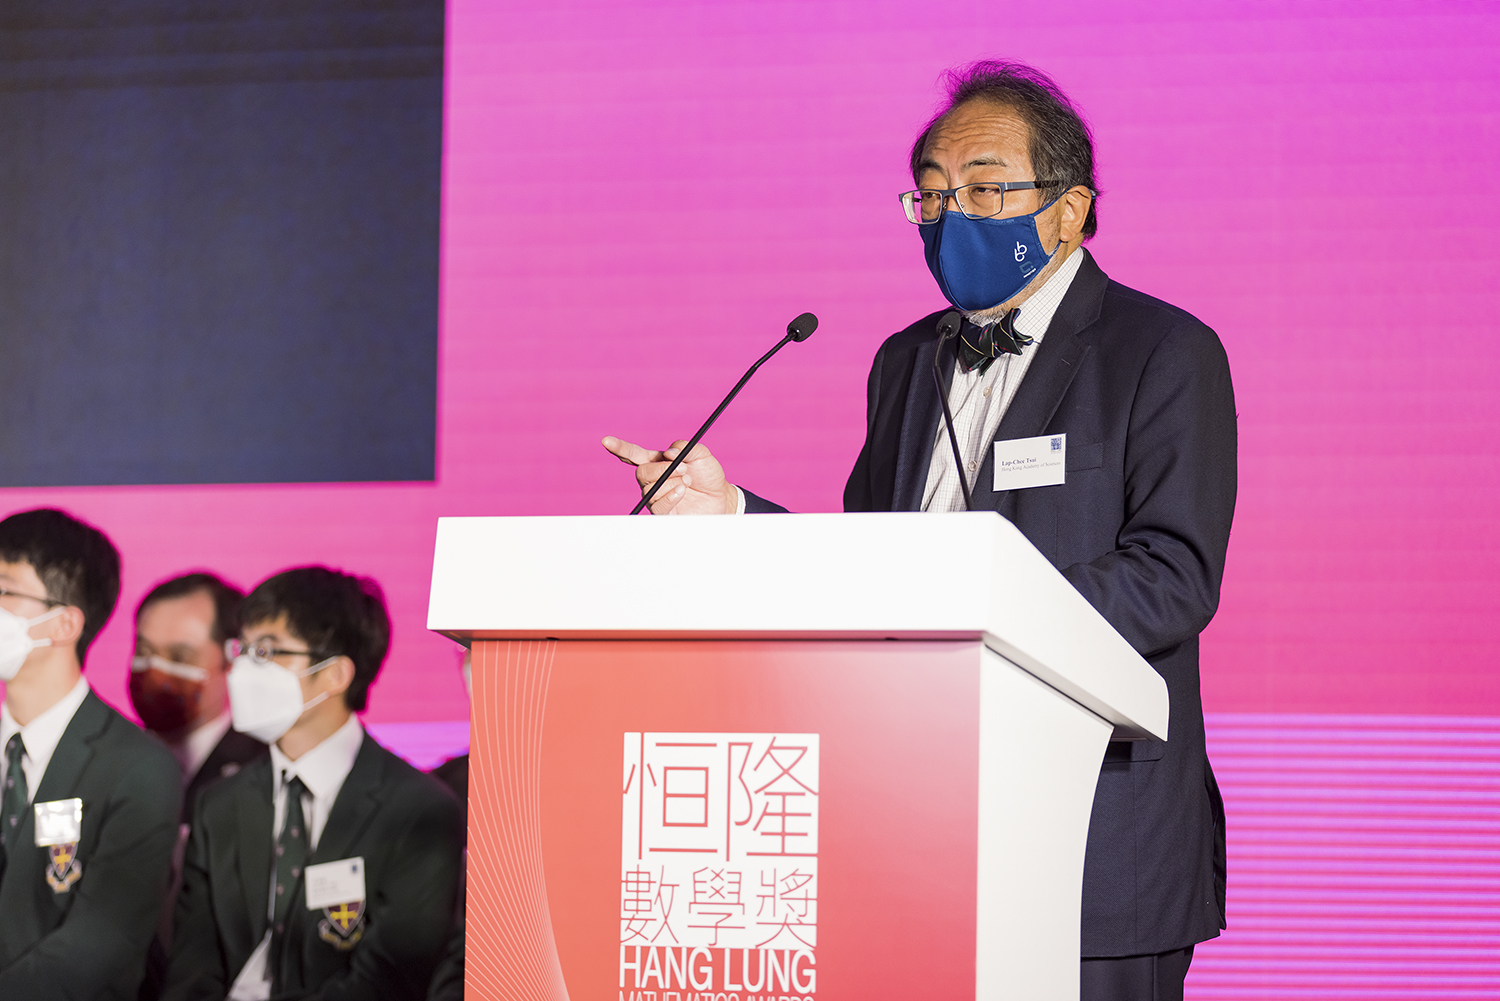 El Sr. Ronnie Chan, cofundador de Hang Lung Mathematics Awards (HLMA) y presidente de Hang Lung Properties y el profesor Lap-Chee Tsui, GBM, GBS, JP, presidente de la Academia de Ciencias de Hong Kong, analizan la importancia de las matemáticas y sostenibilidad, con los ganadores de la HLMA 2021 en el escenario